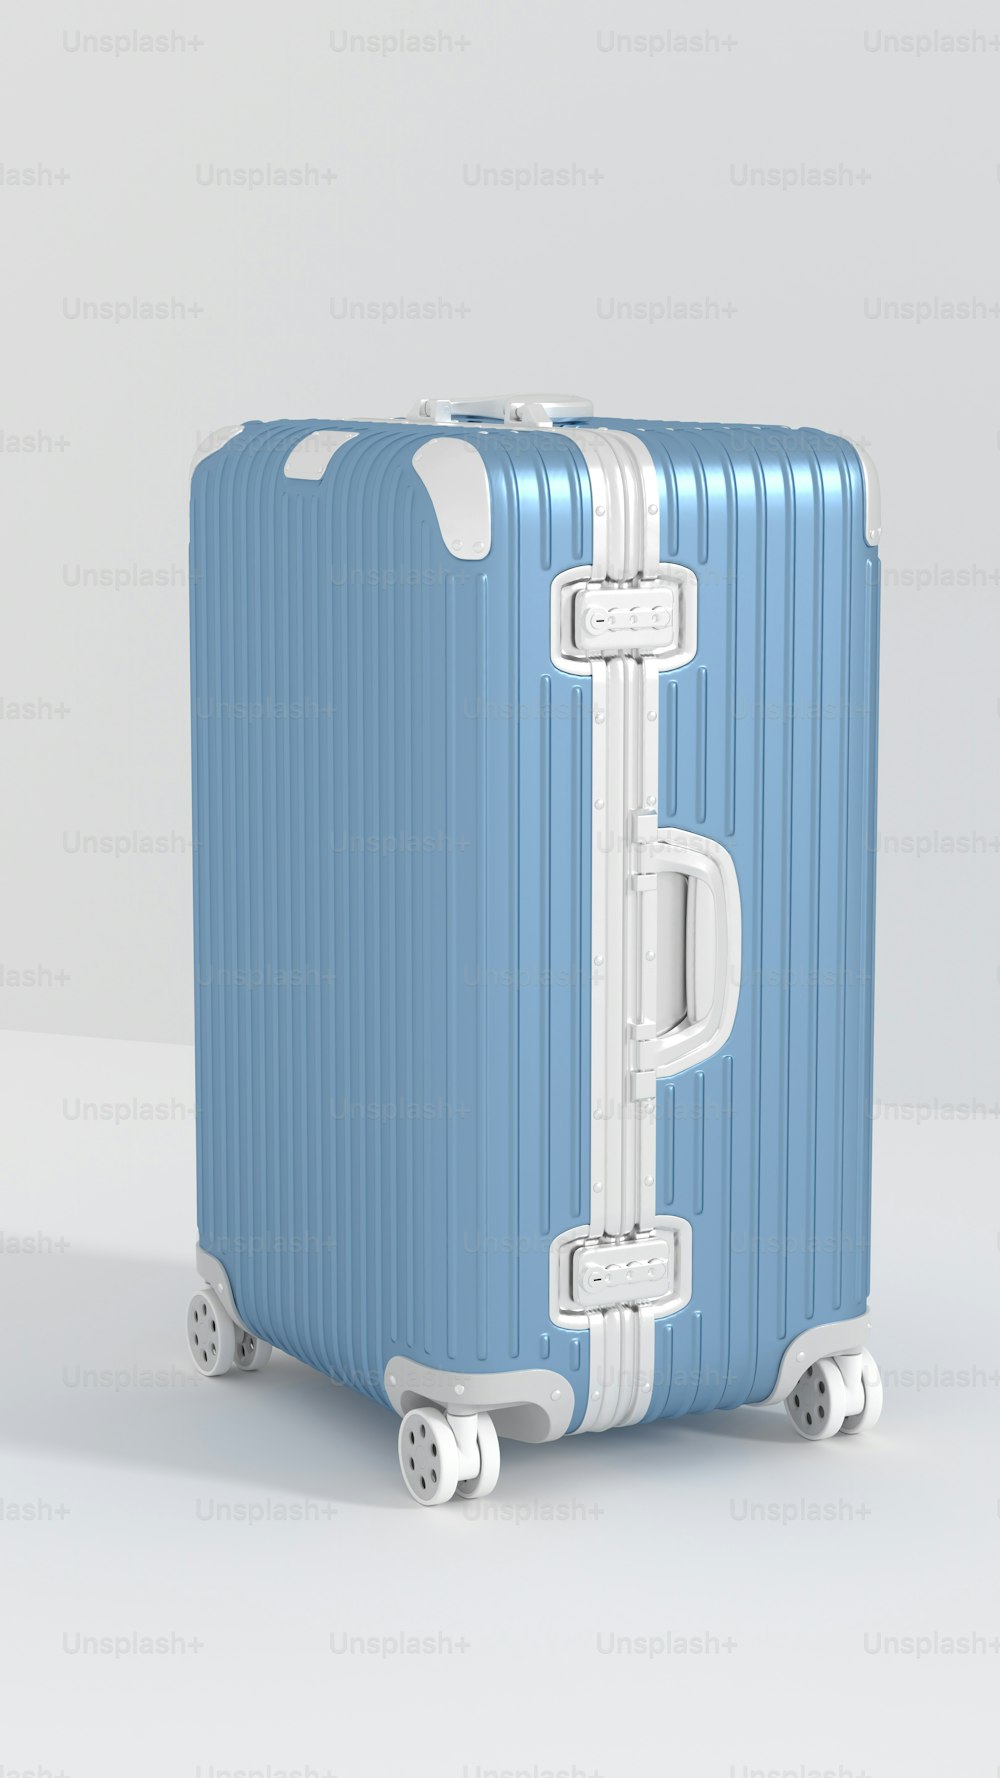 Una maleta azul y blanca sobre ruedas